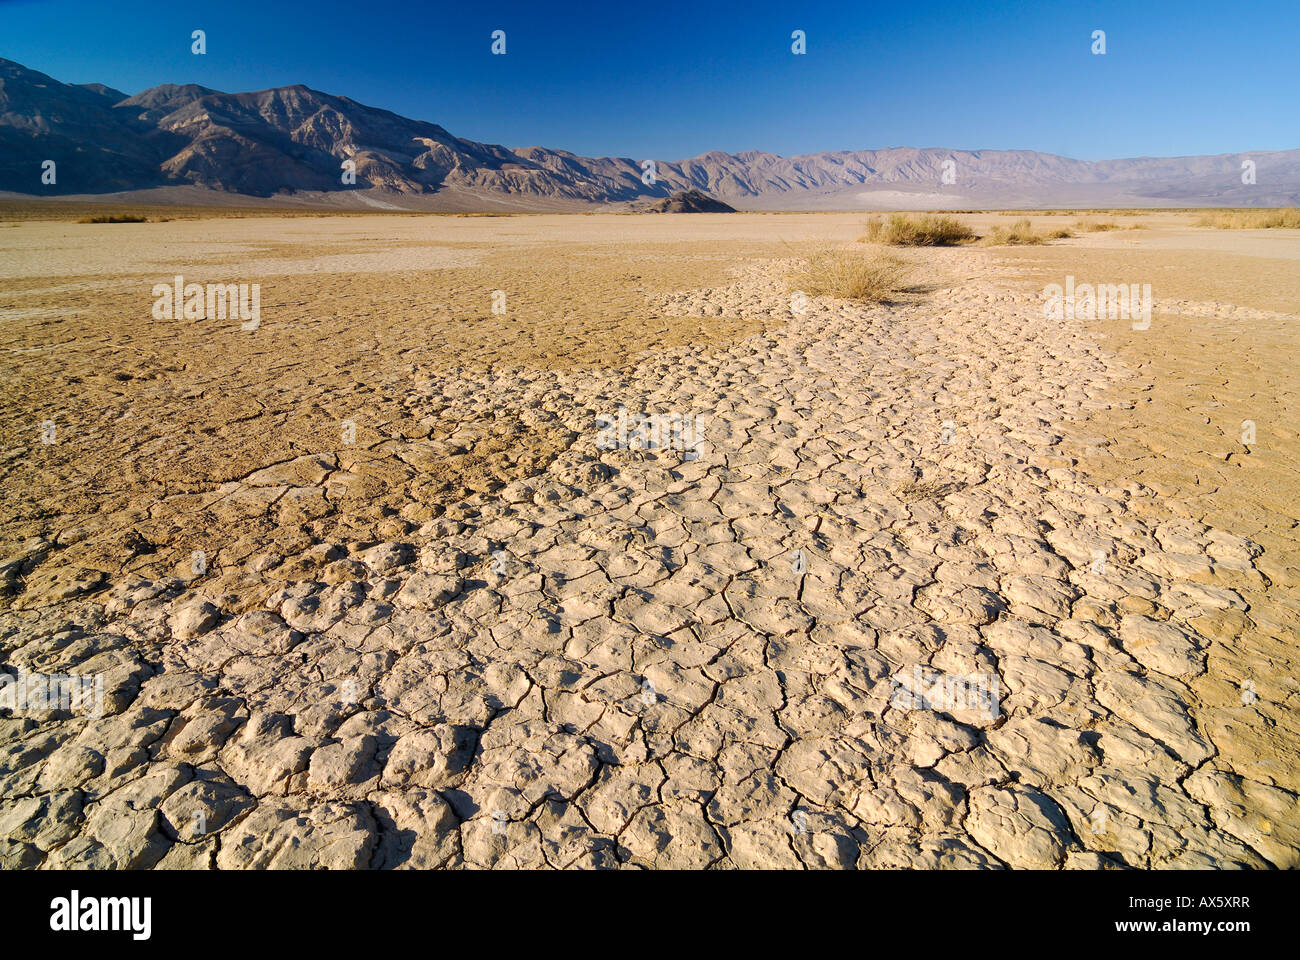 Les fissures de dessiccation, loam sablonneux arides à Stovepipe Wells dans Death Valley National Park, California, USA, Amérique du Nord Banque D'Images